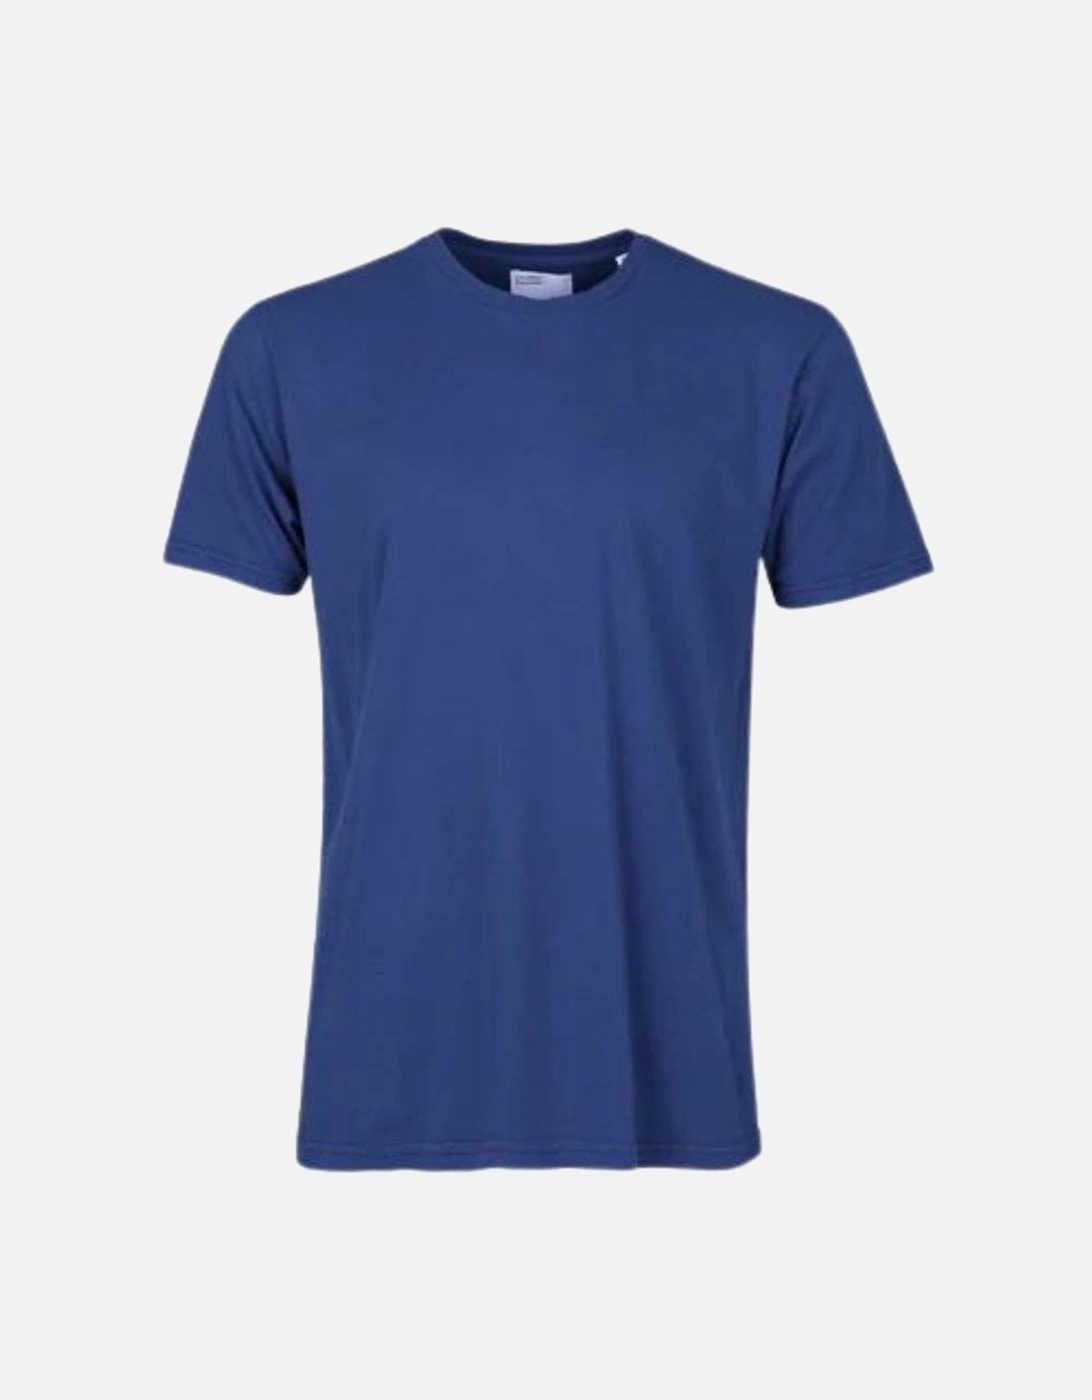 Classic Organic T-Shirt - Royal Blue, 2 of 1